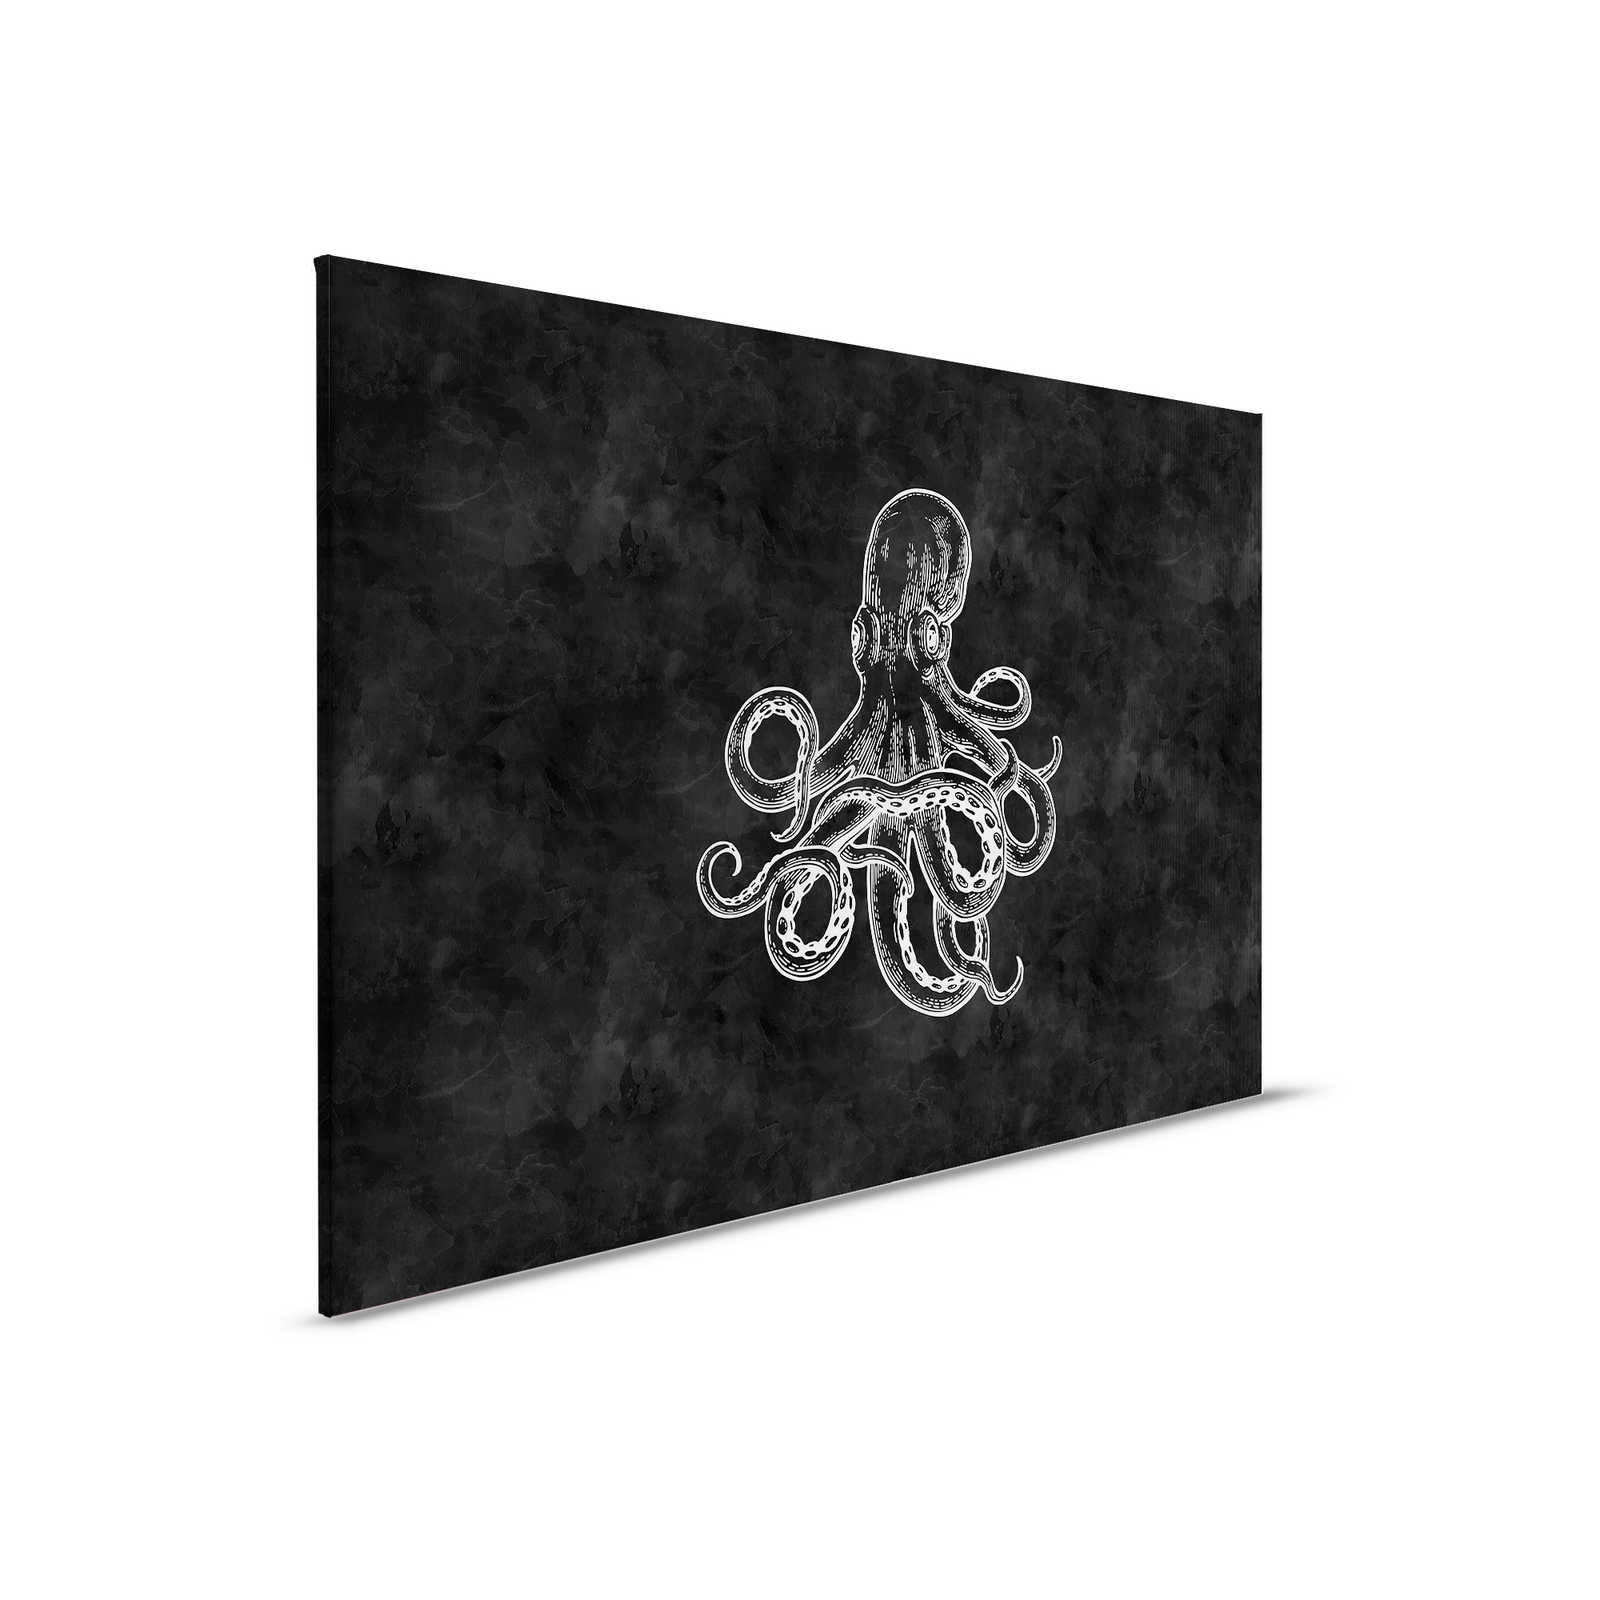         Schwarz-Weißes Leinwandbild Oktopus & Tafel-Look – 0,90 m x 0,60 m
    